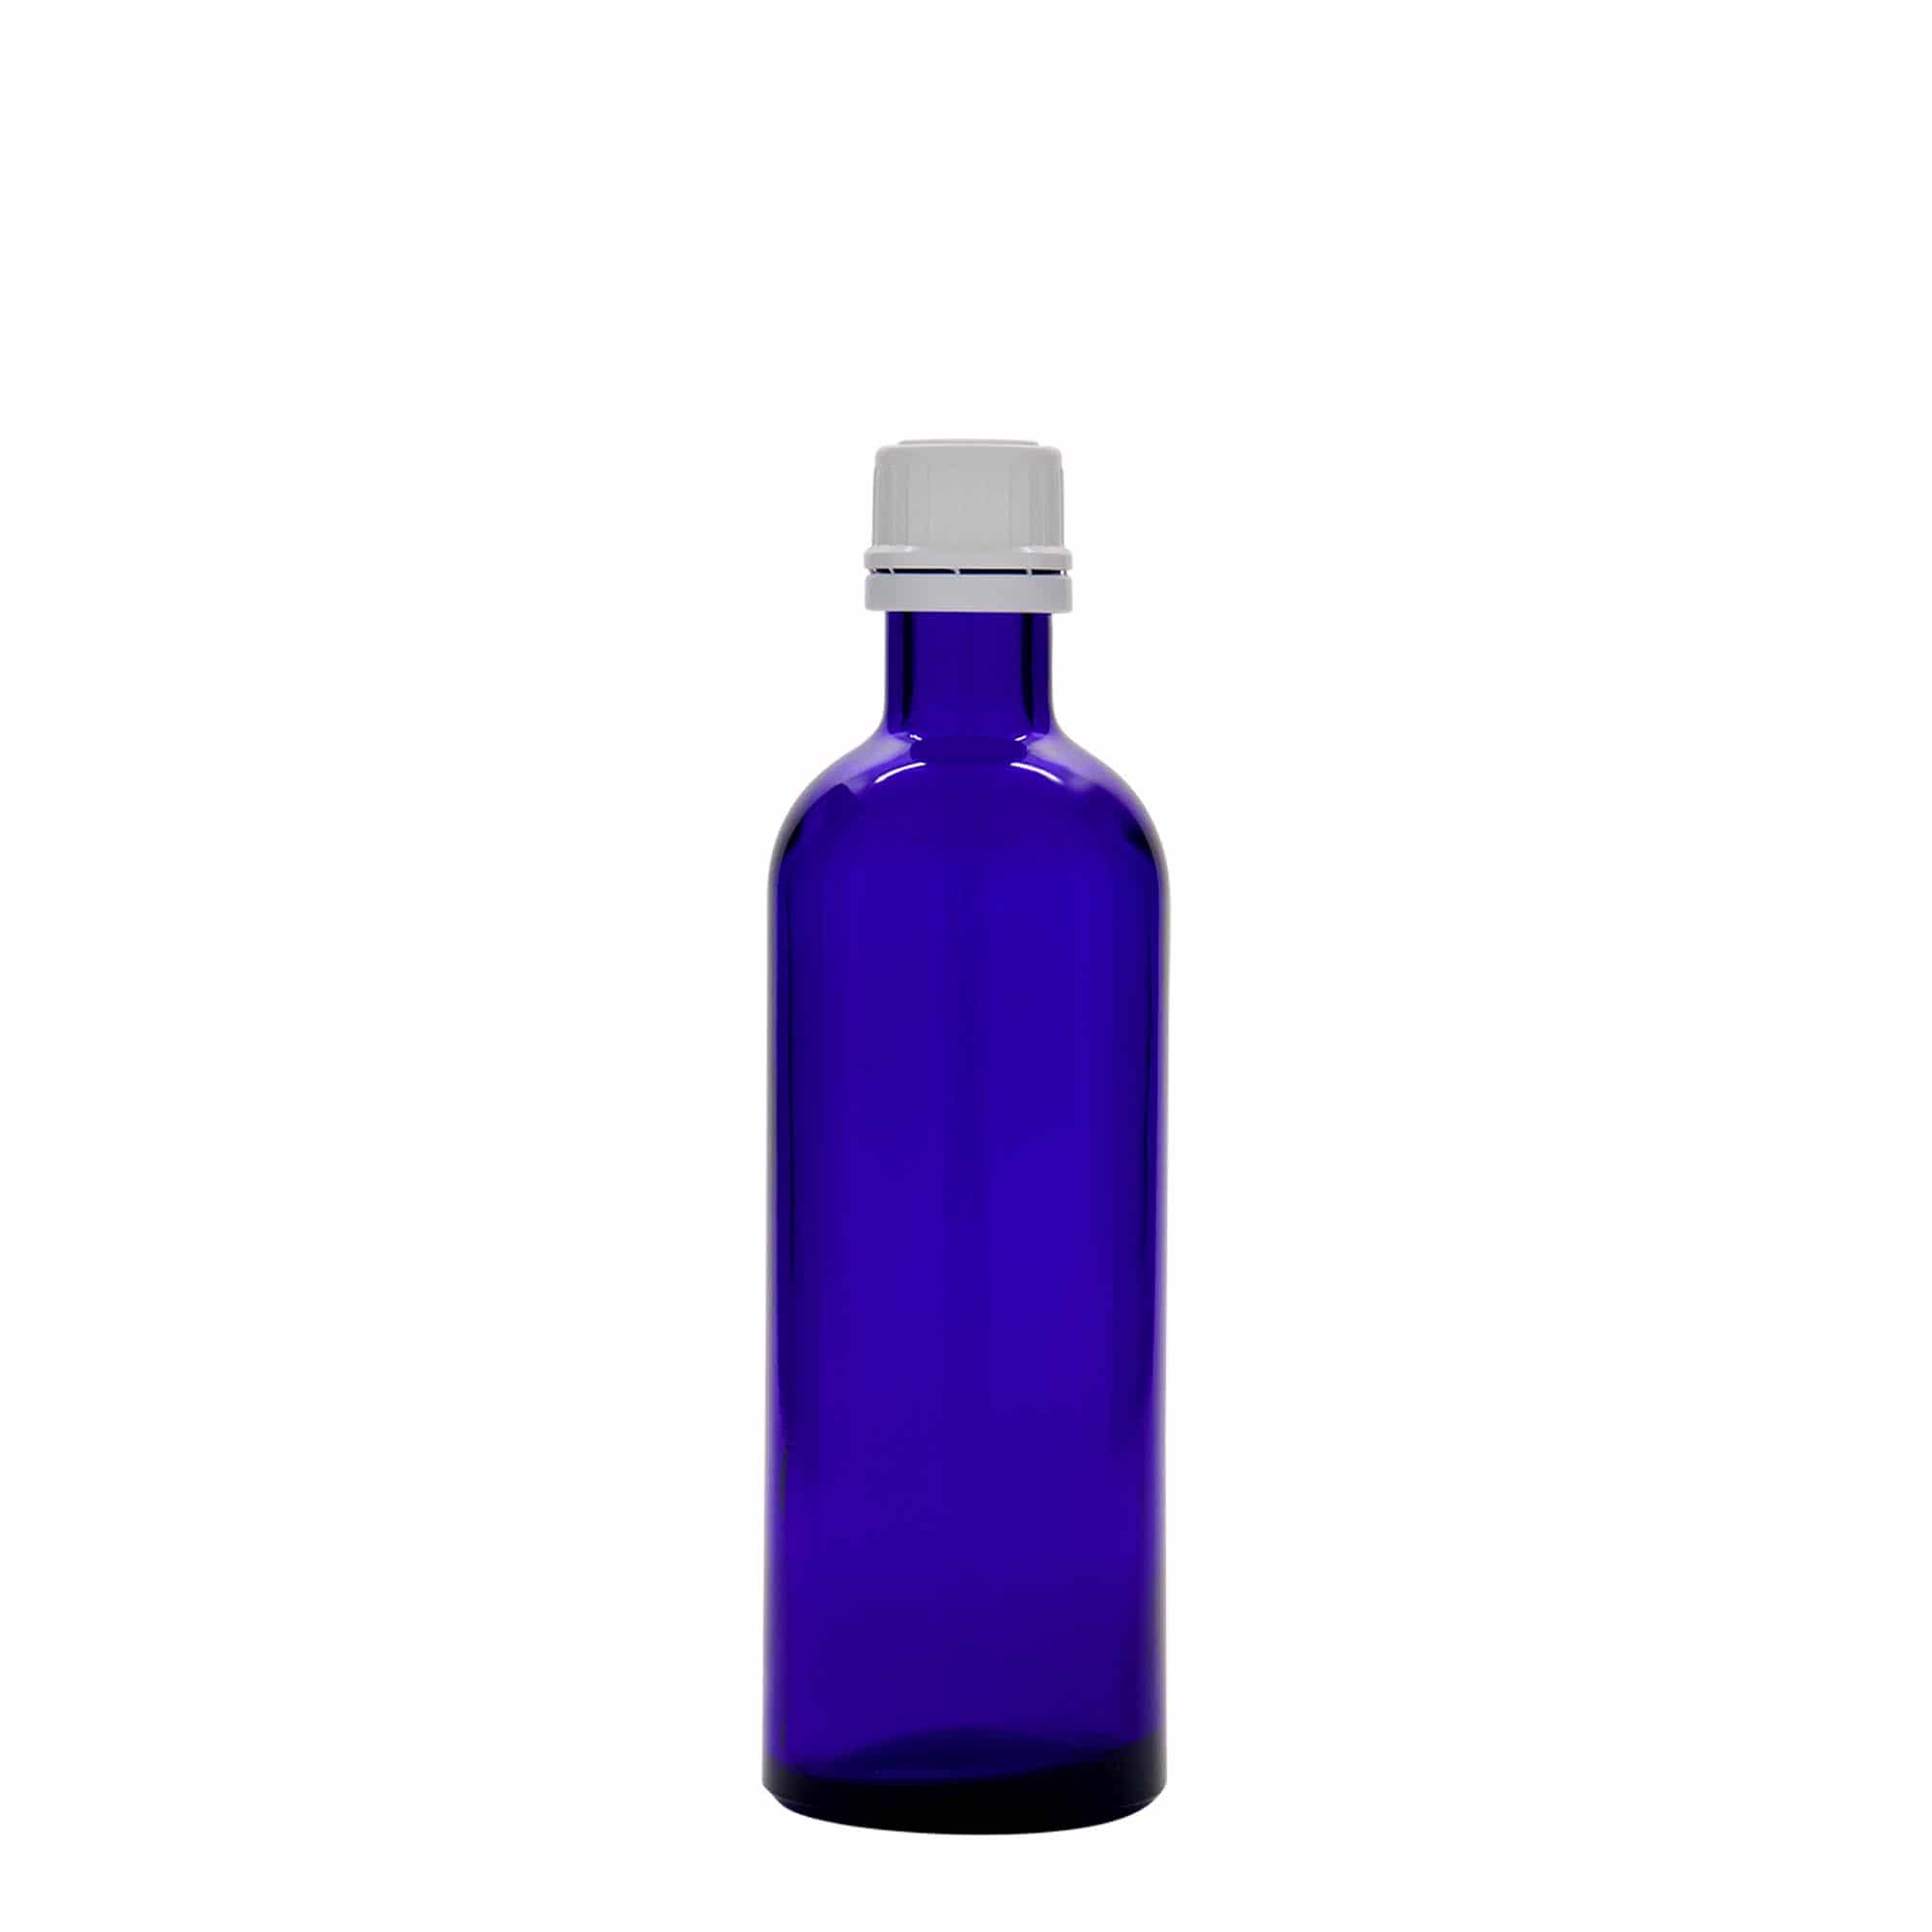 200 ml-es patikai üveg, üveg, királykék, szájnyílás: DIN 22